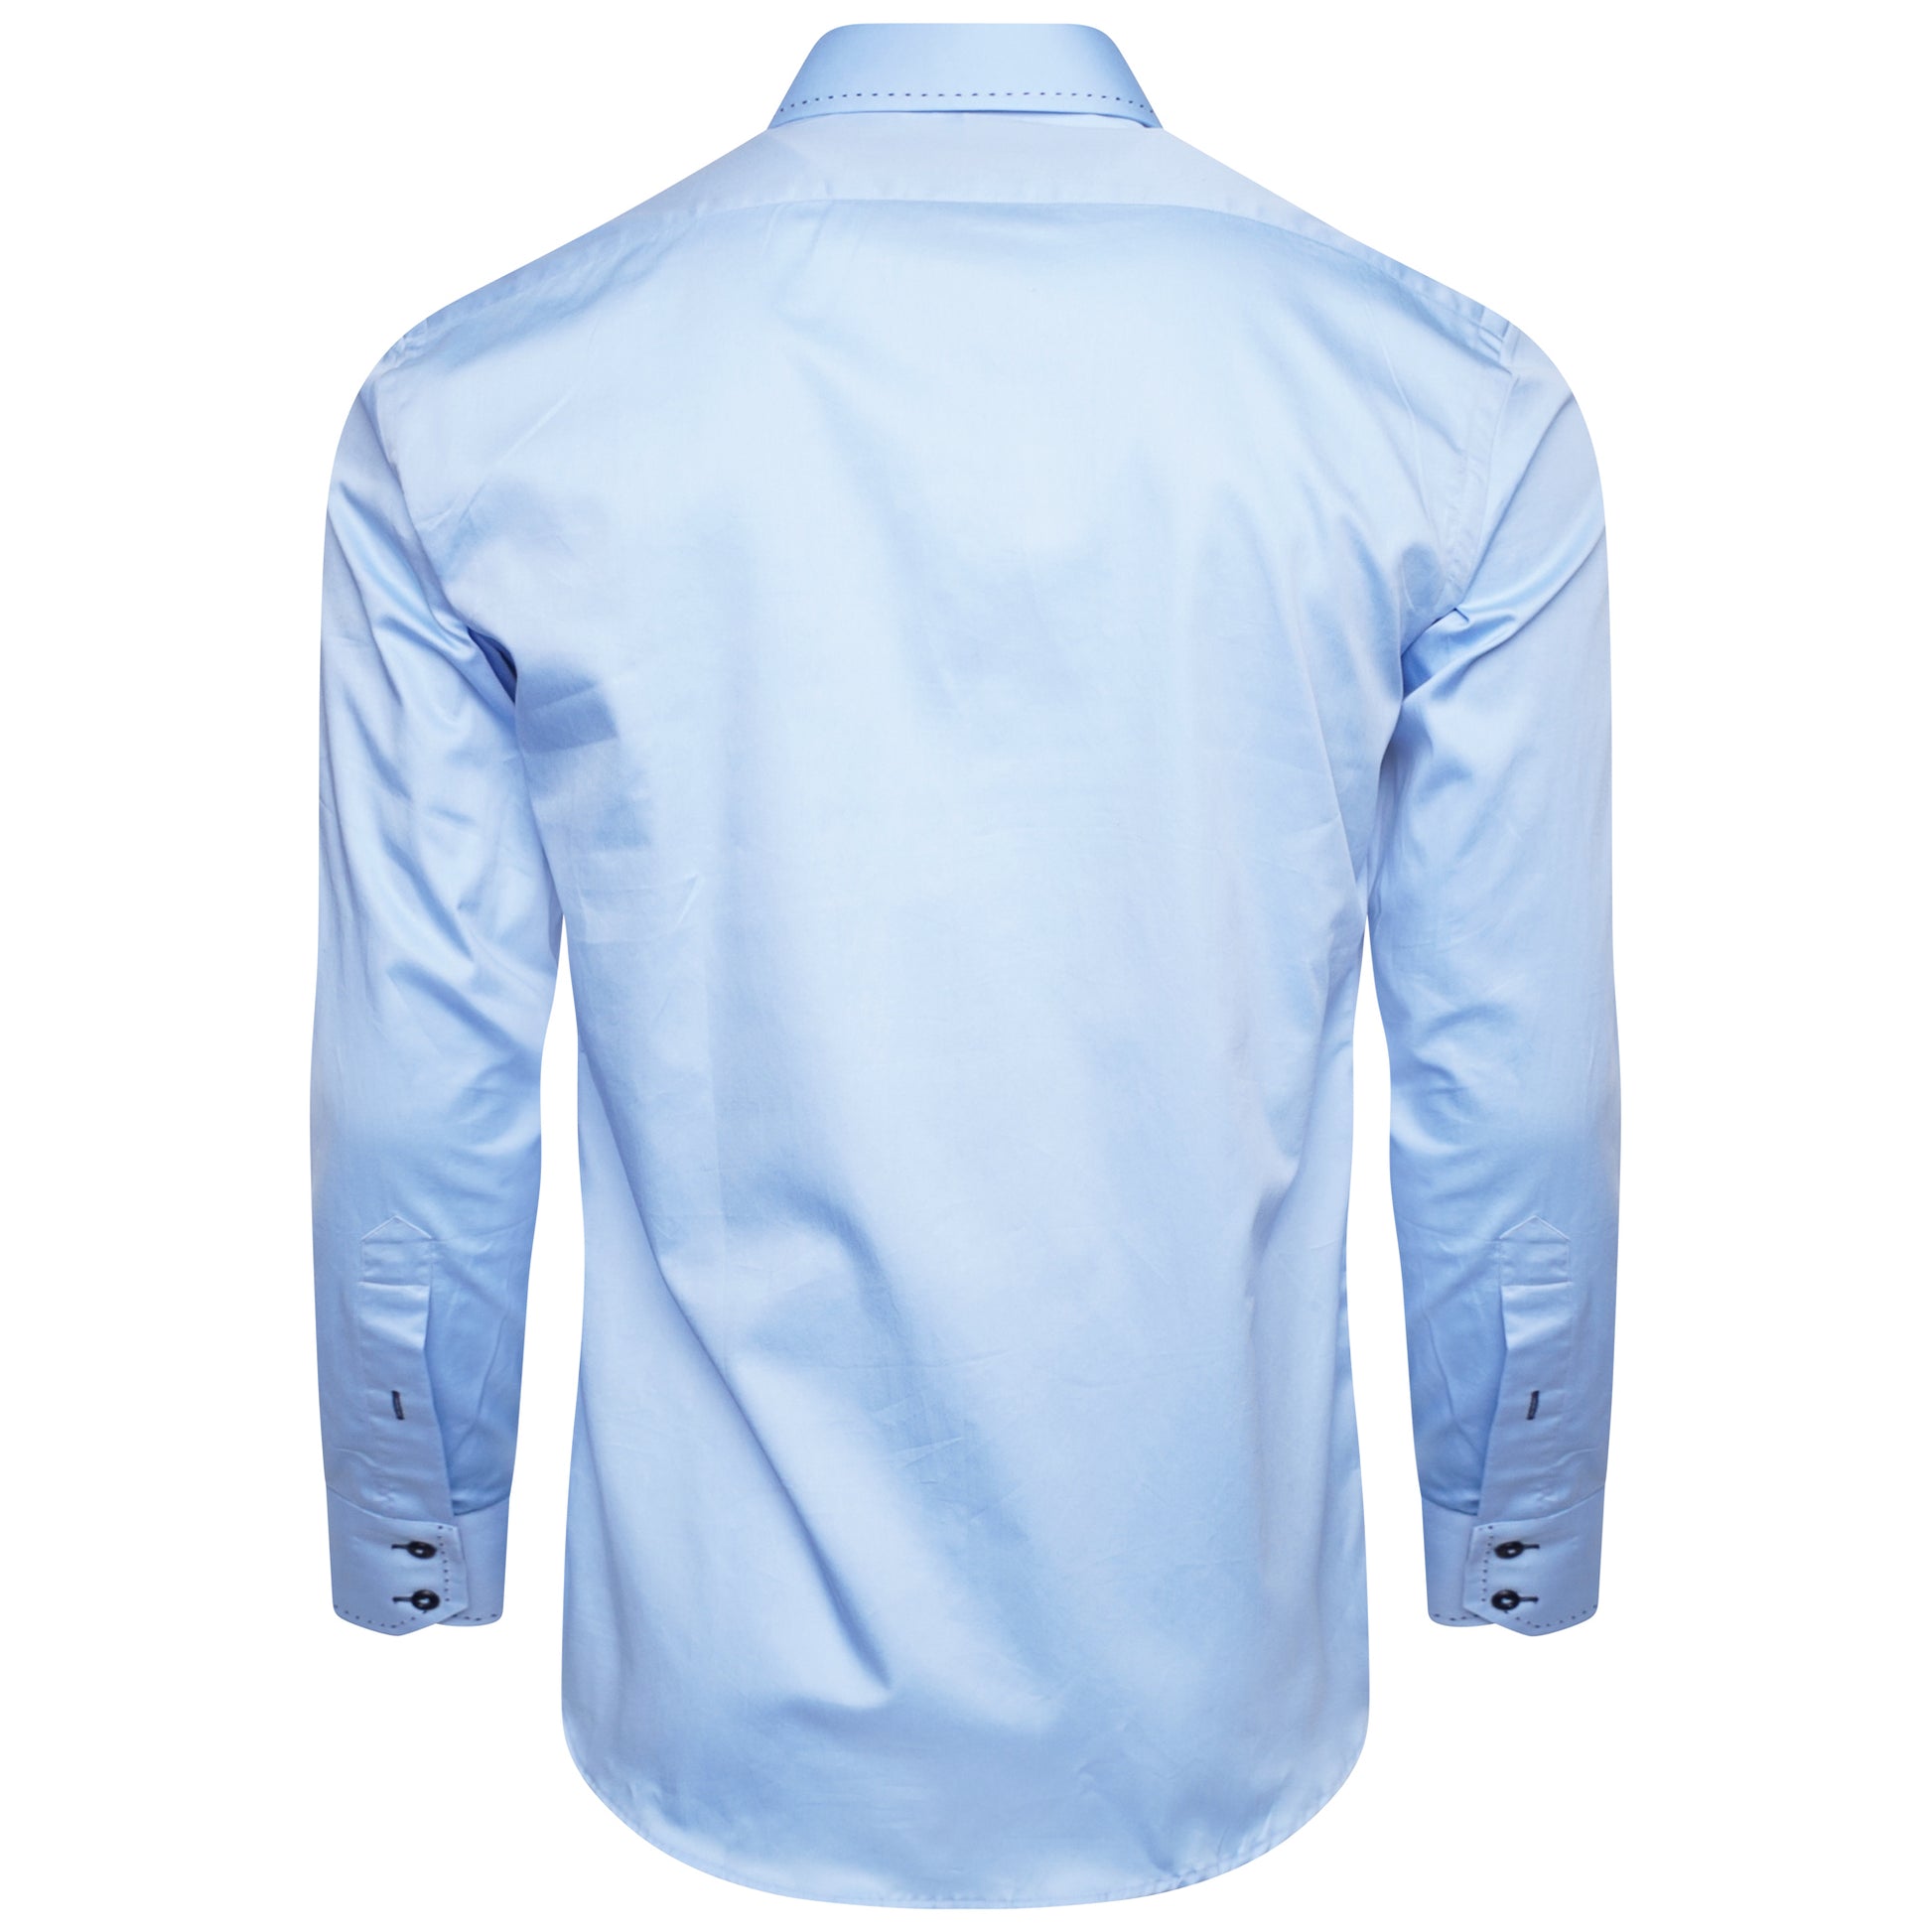 Men's Sky Blue Long Sleeve Shirt